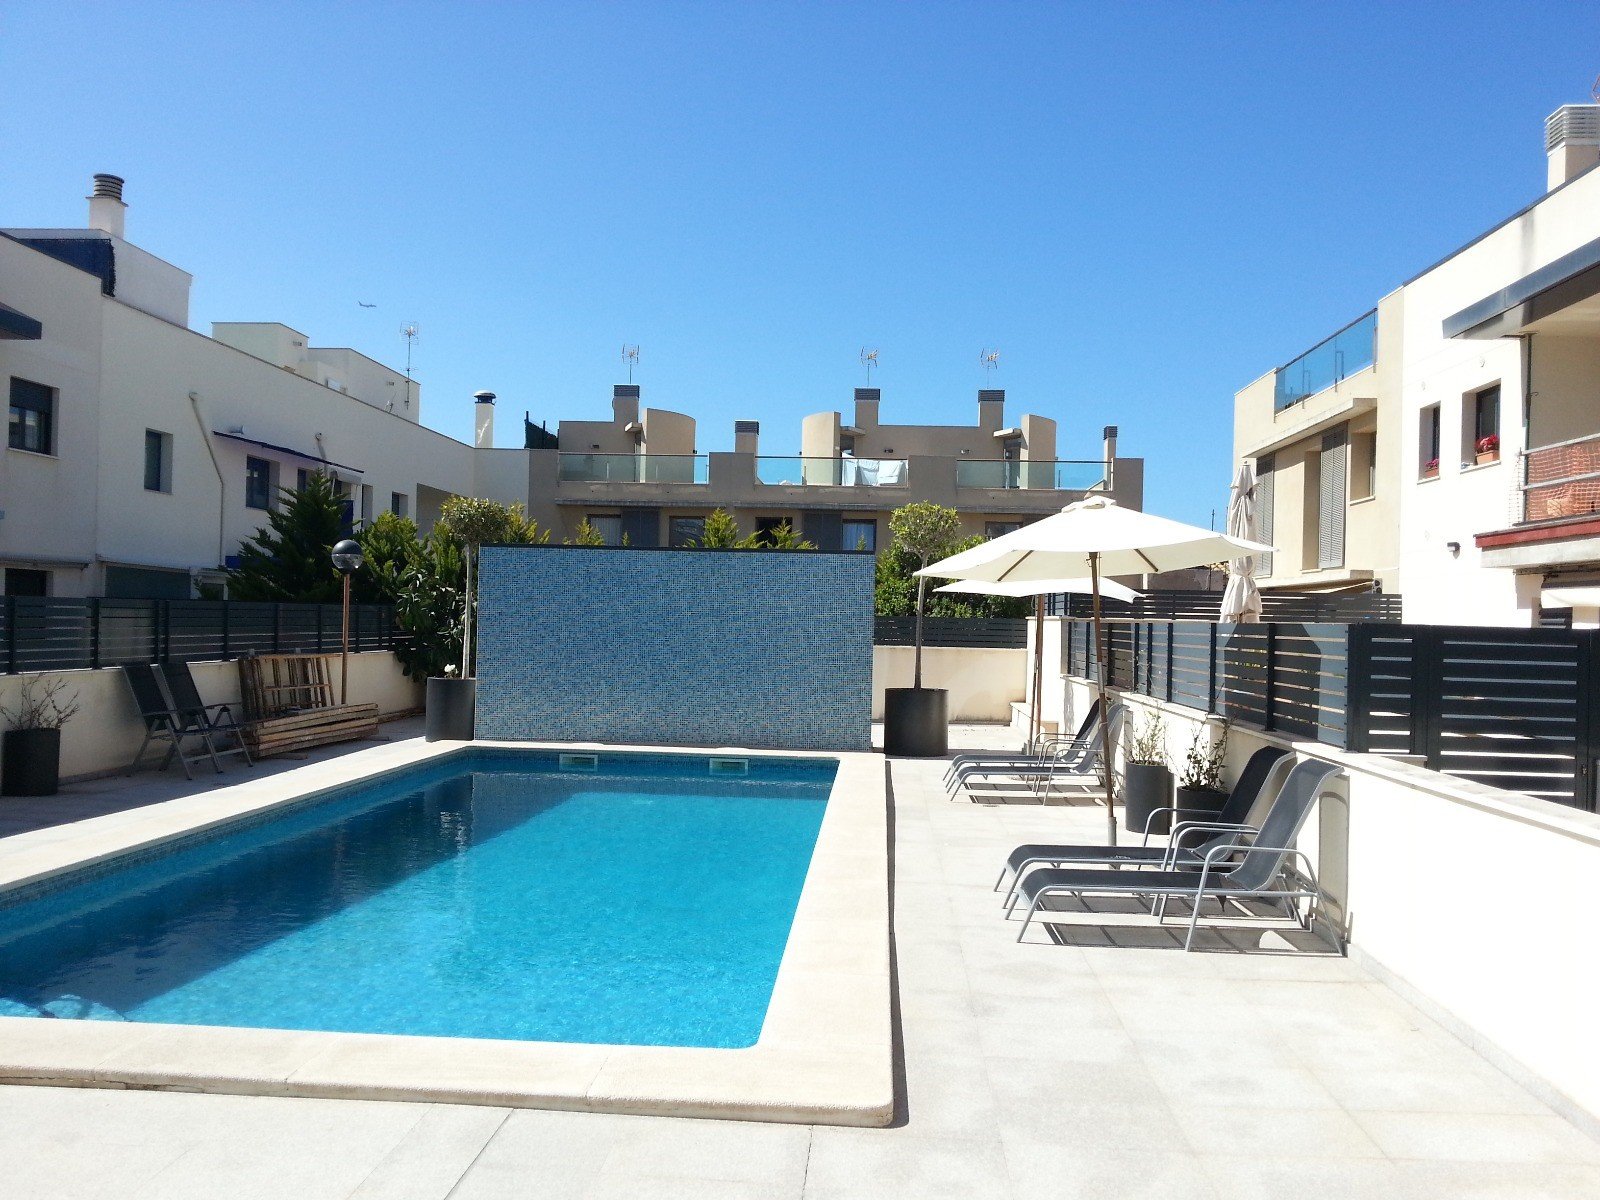 Ad Rental Apartment Palma de Mallorca El Molinar (07001) ref:L0554PM